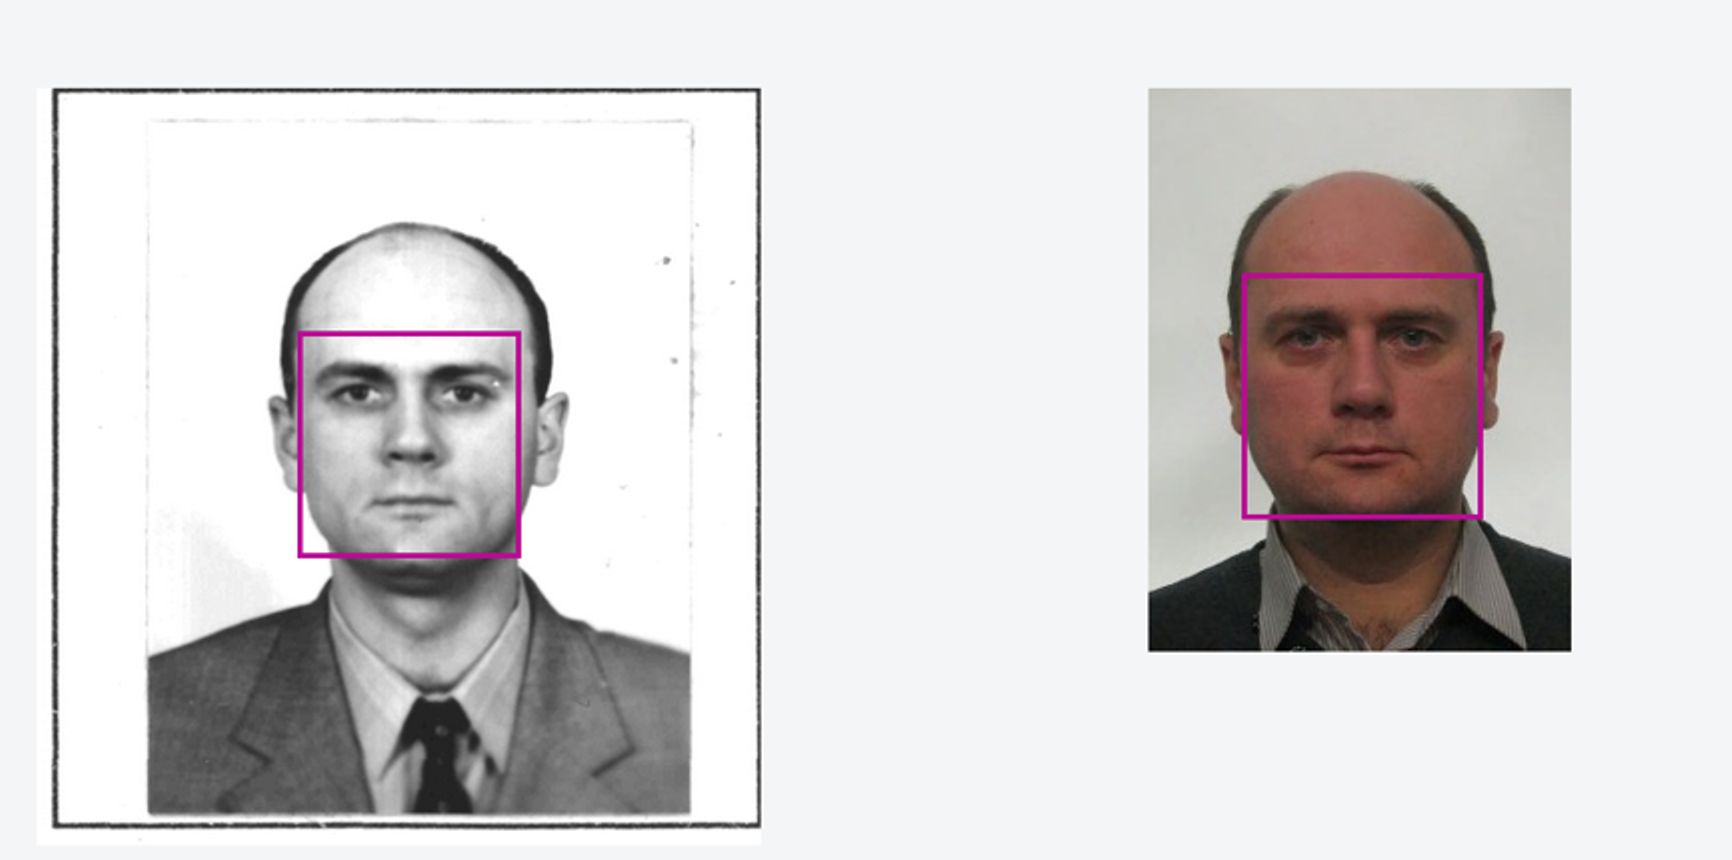 Слева - паспортное фото Андрея Сазонцева, справа - визовое фото "Андрея Митракова"